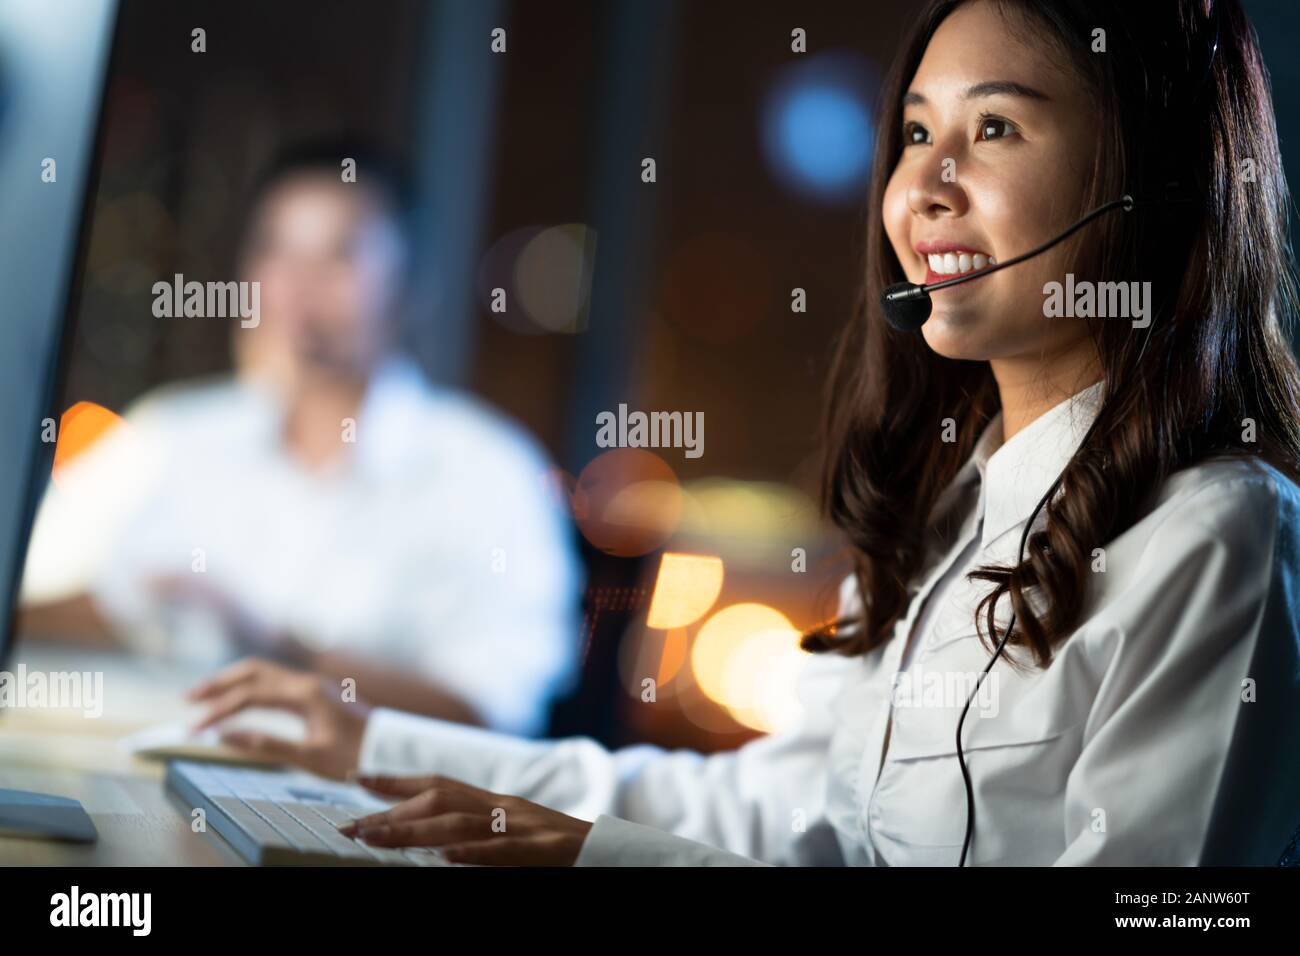 Une femme asiatique travaille comme service d'assistance à la clientèle ou opérateur téléphonique du centre d'appels, à l'aide d'un ordinateur de bureau et d'un micro-casque, service de nuit tardif Banque D'Images